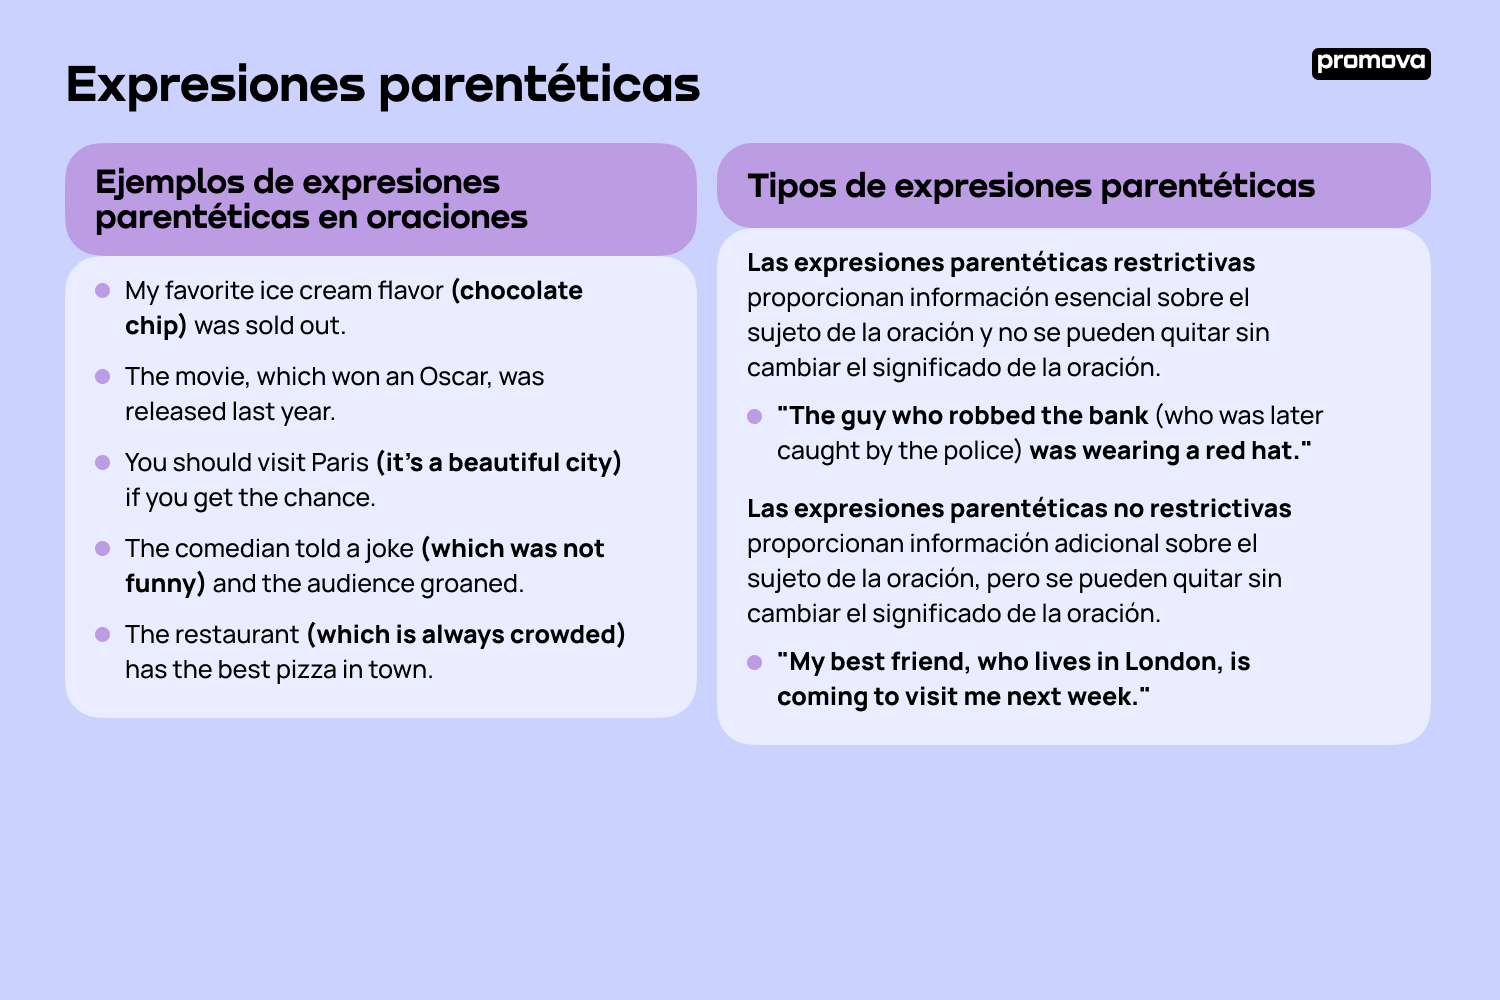 Mejora tu comprensión de las expresiones parentéticas con esta guía